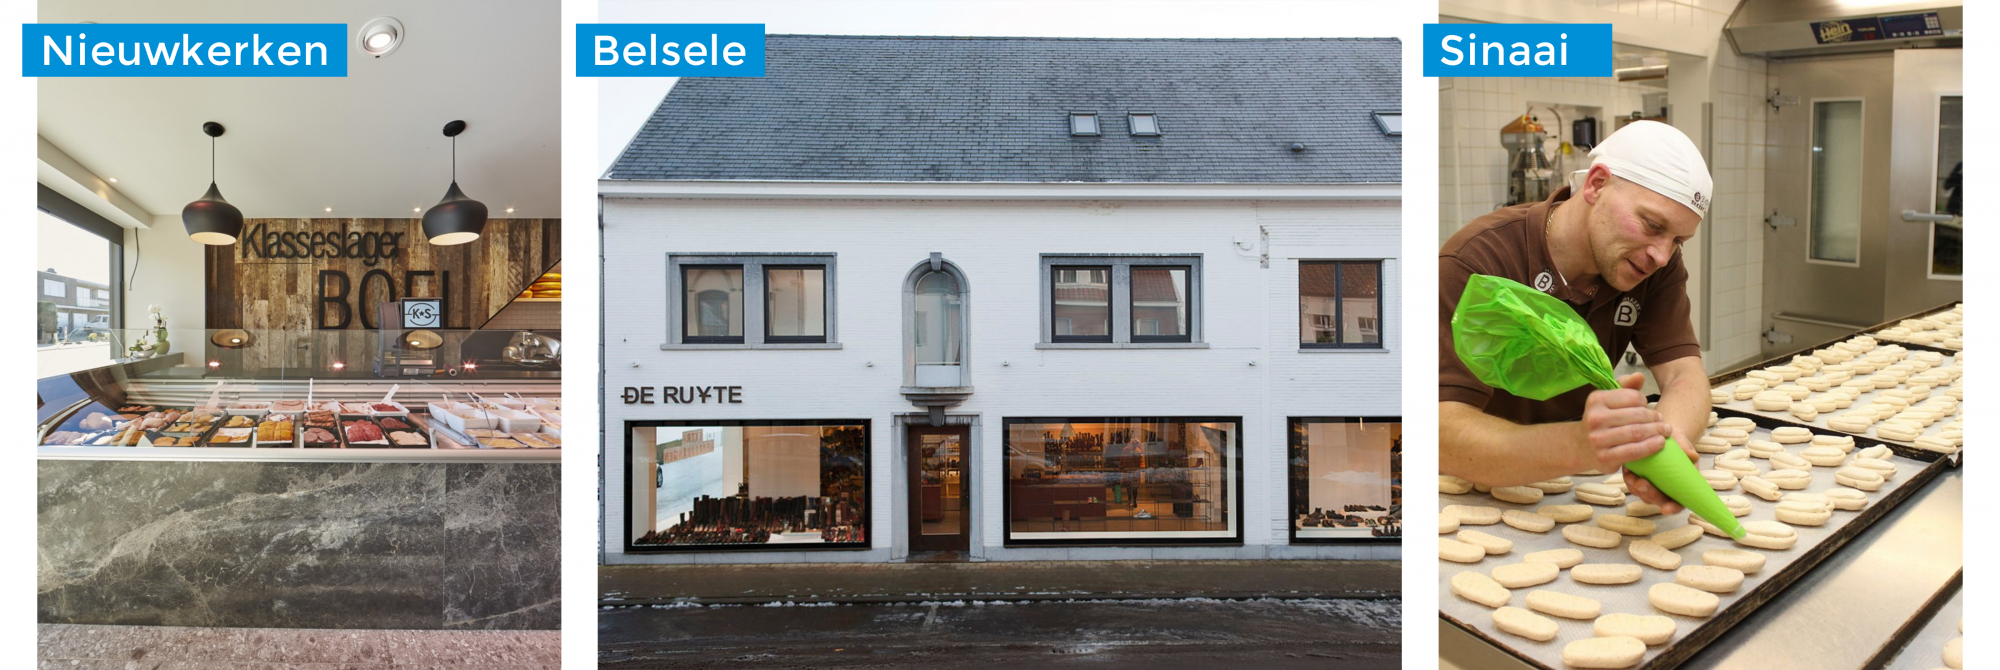 Nieuwkerken | Slagerij Boel - Belsele | De Ruyte - Sinaai | Bakery Art